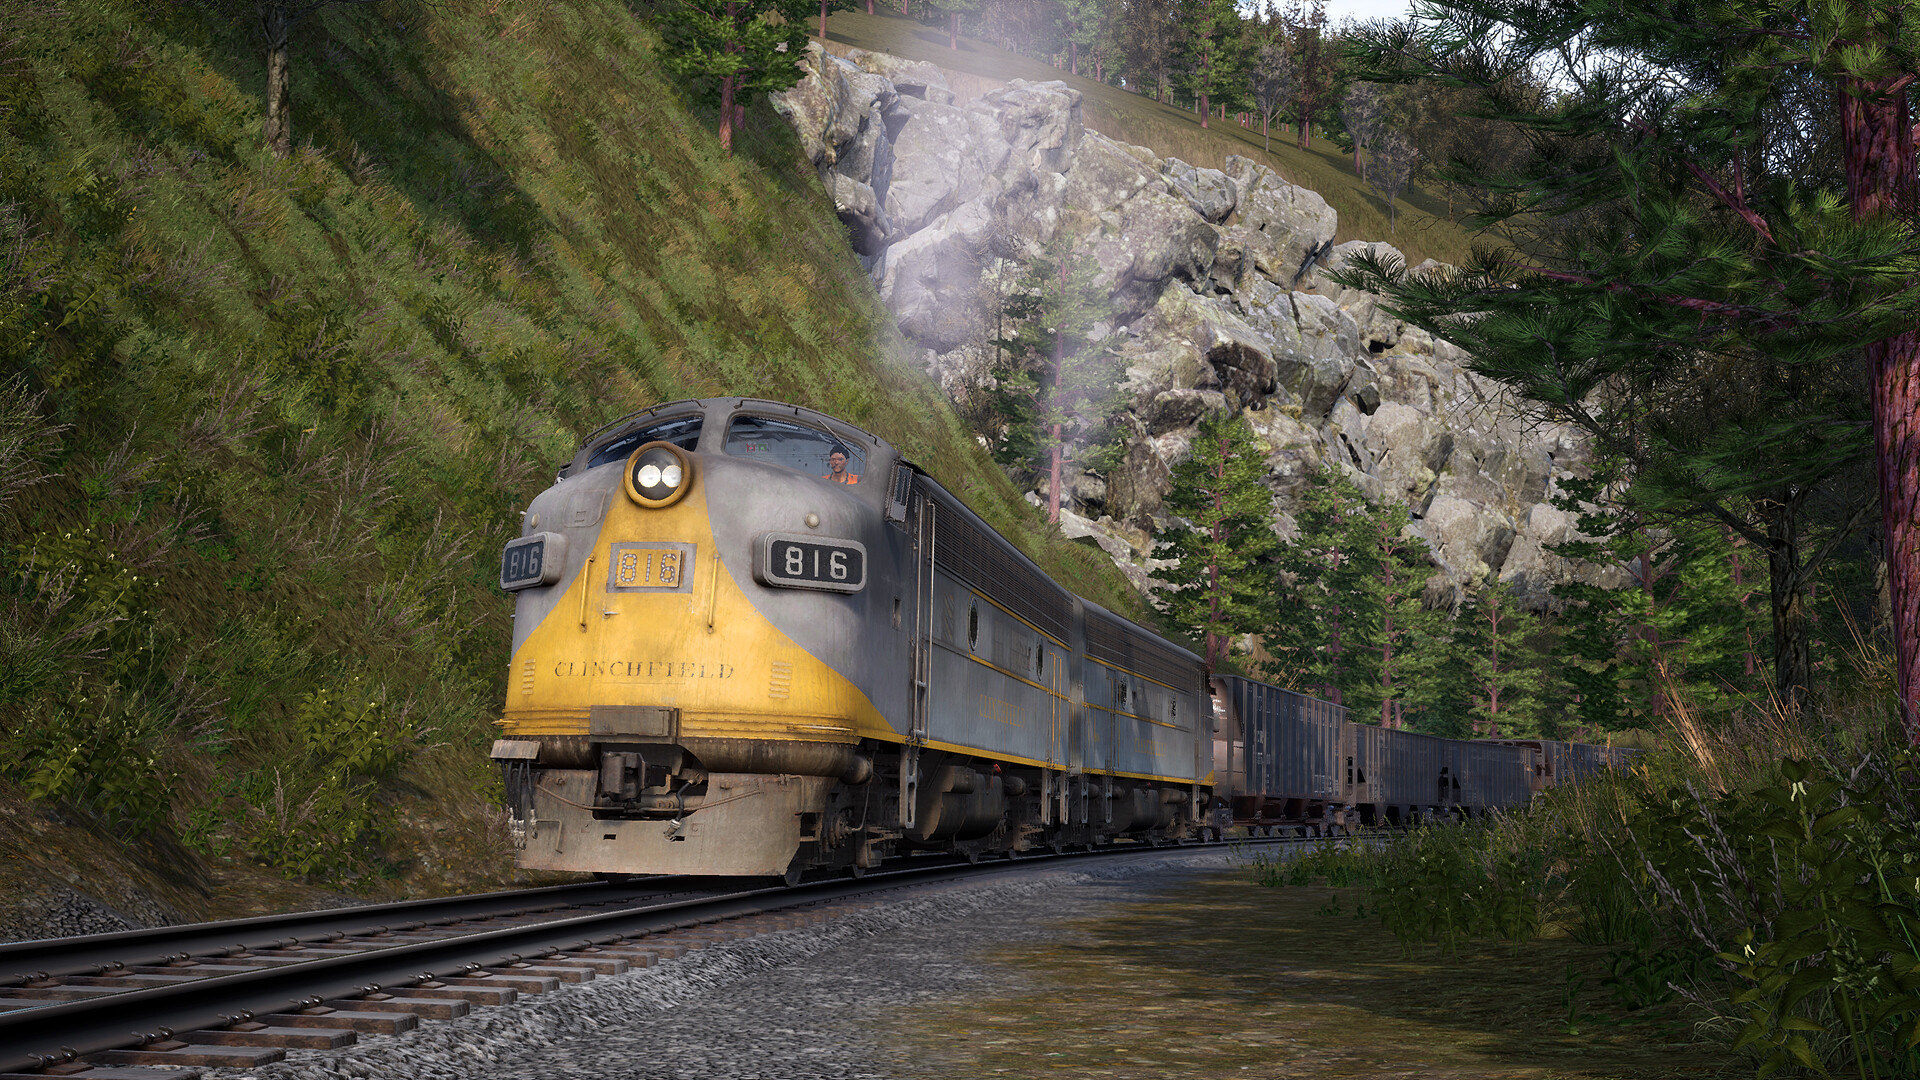 Train Sim World - Clinchfield Railroad - Elkhorn - Dante Route Add-On DLC Steam CD Key [USD 1.25]